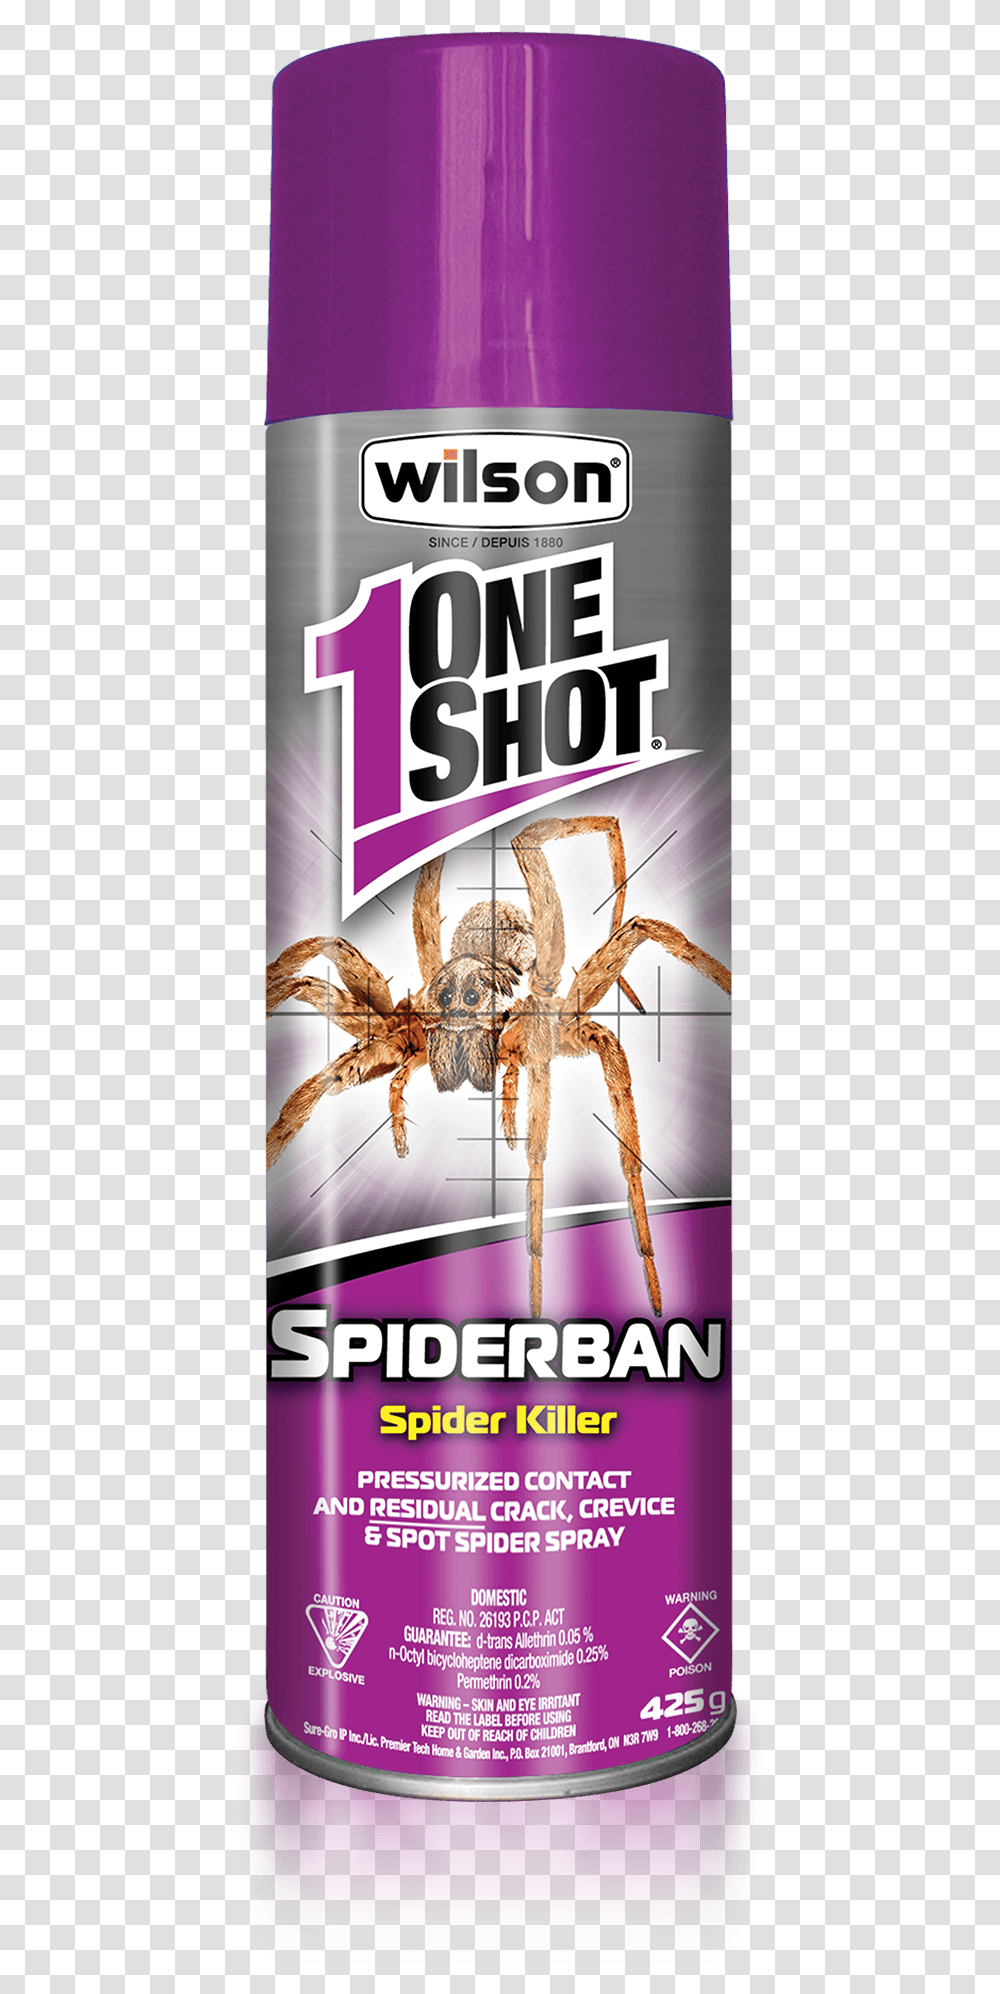 Wilson One Shot Spiderban Spider Killer 1 Shot Spider Spray, Invertebrate, Animal, Arachnid, Poster Transparent Png